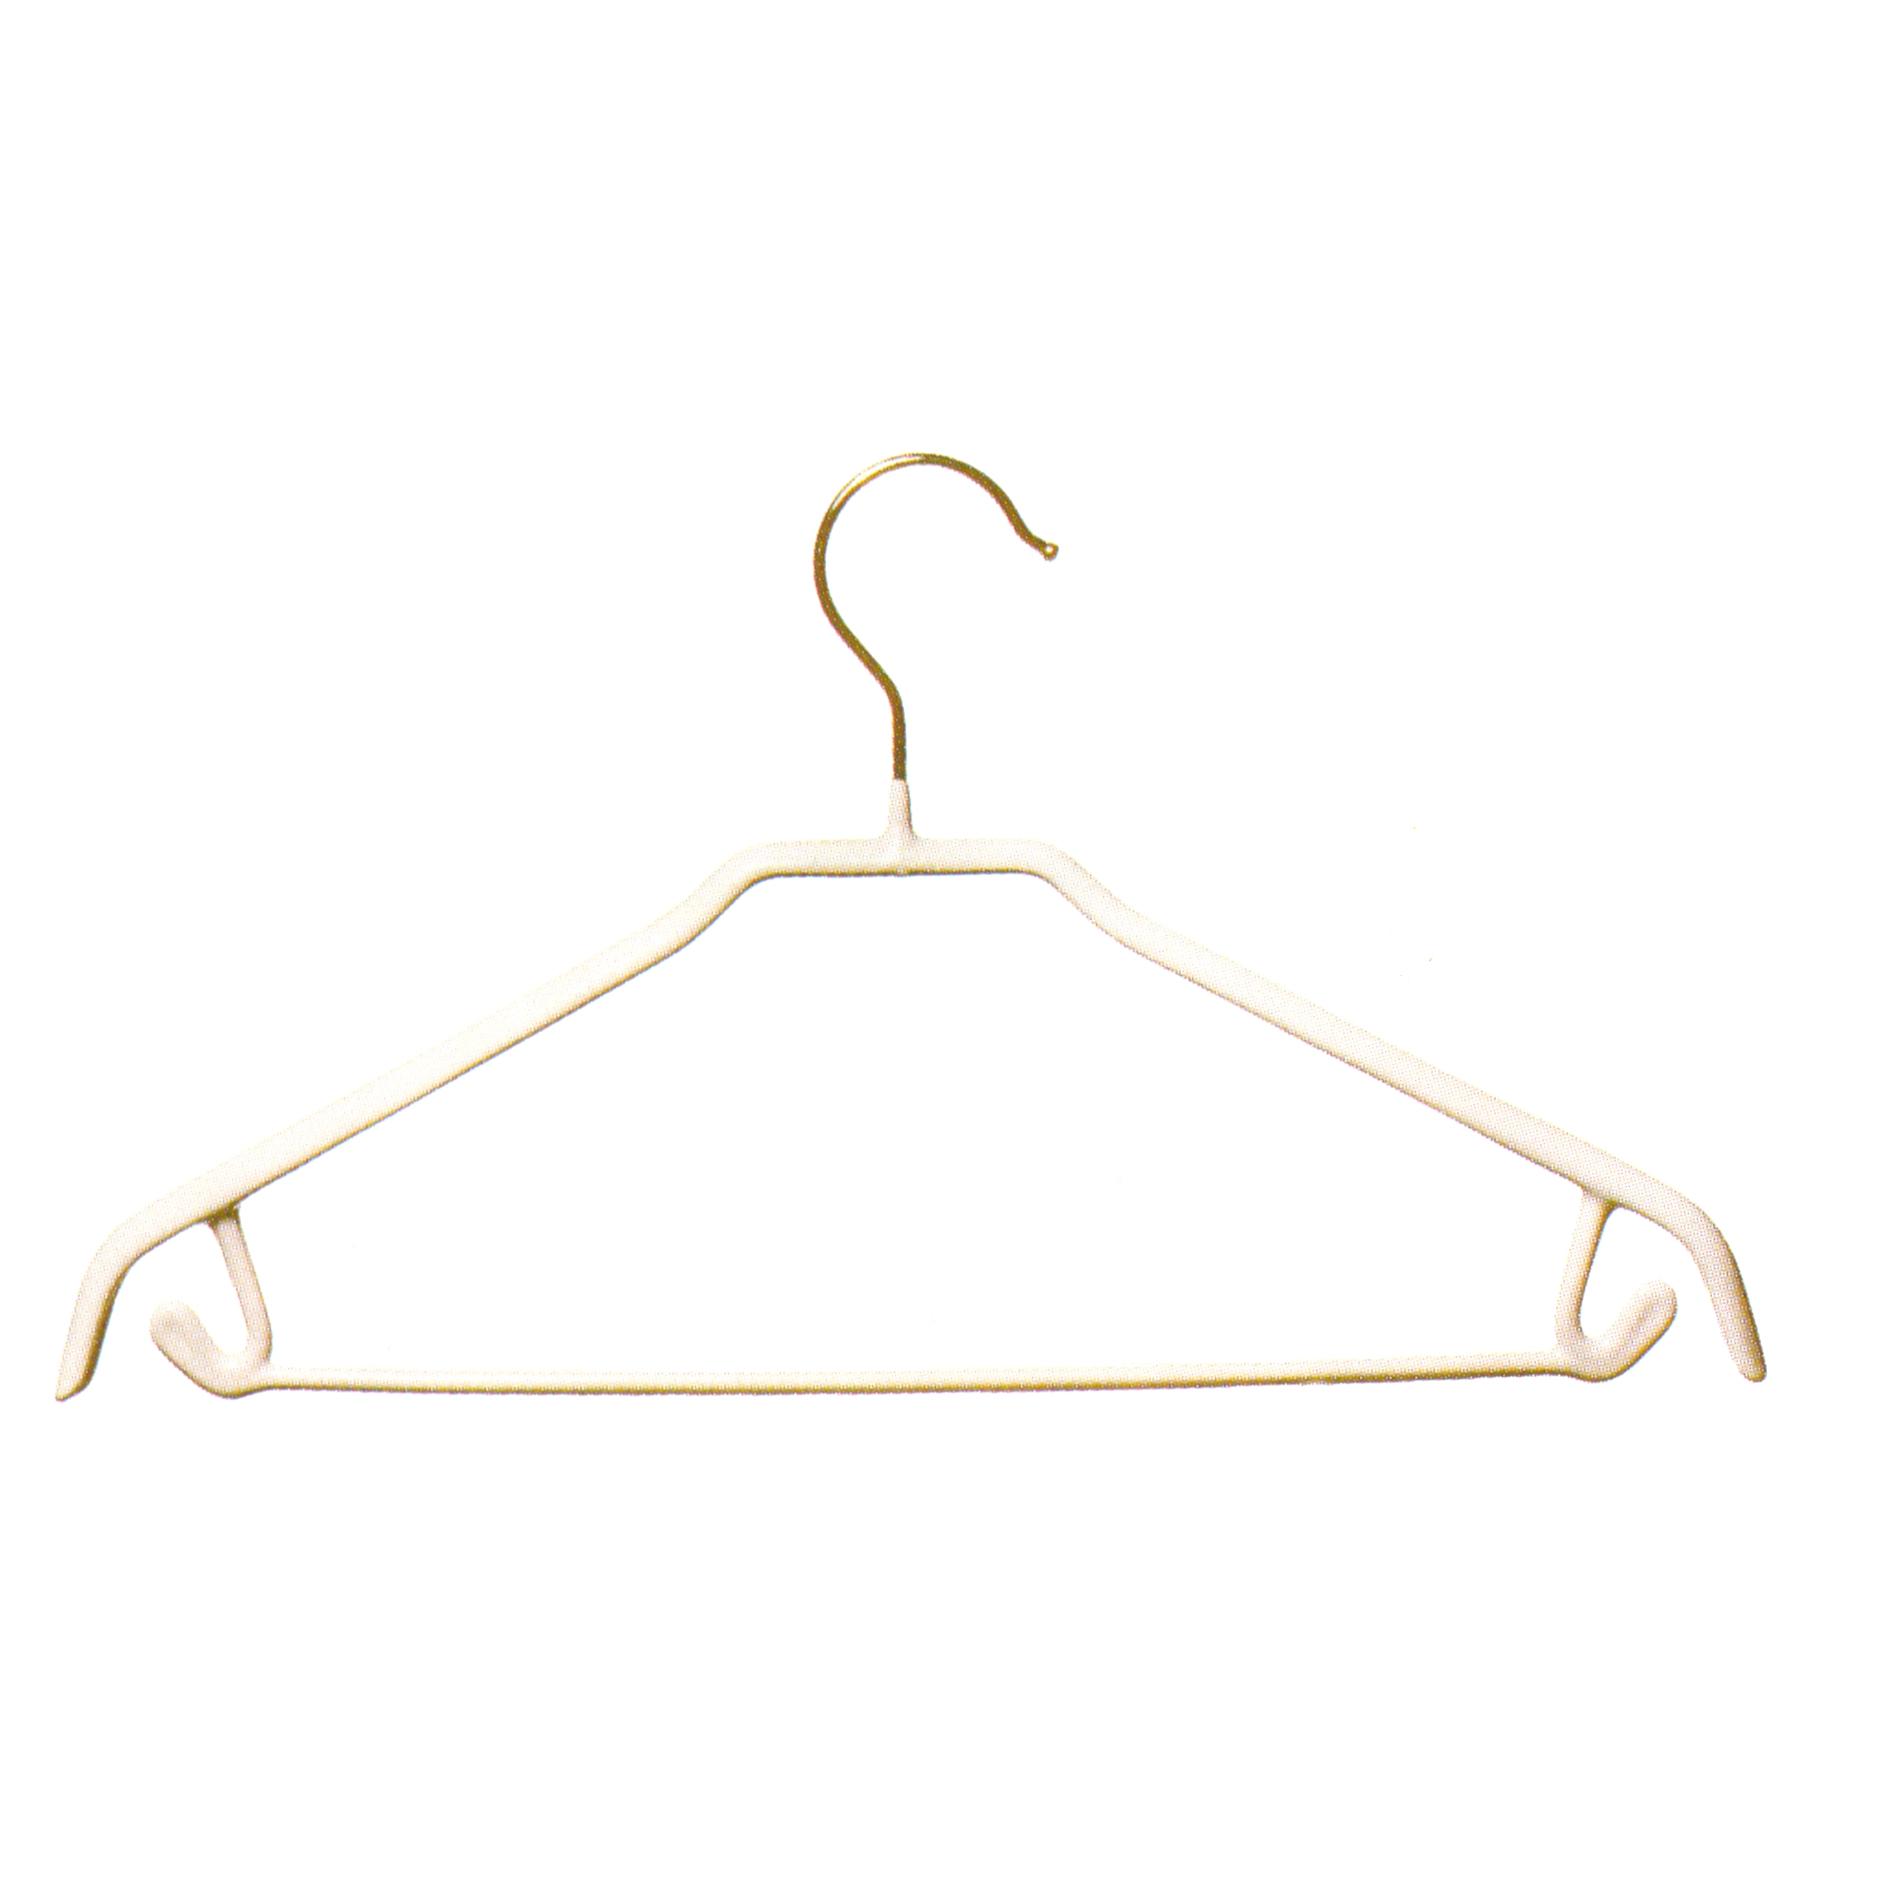 White Non-Slip Suit Hanger